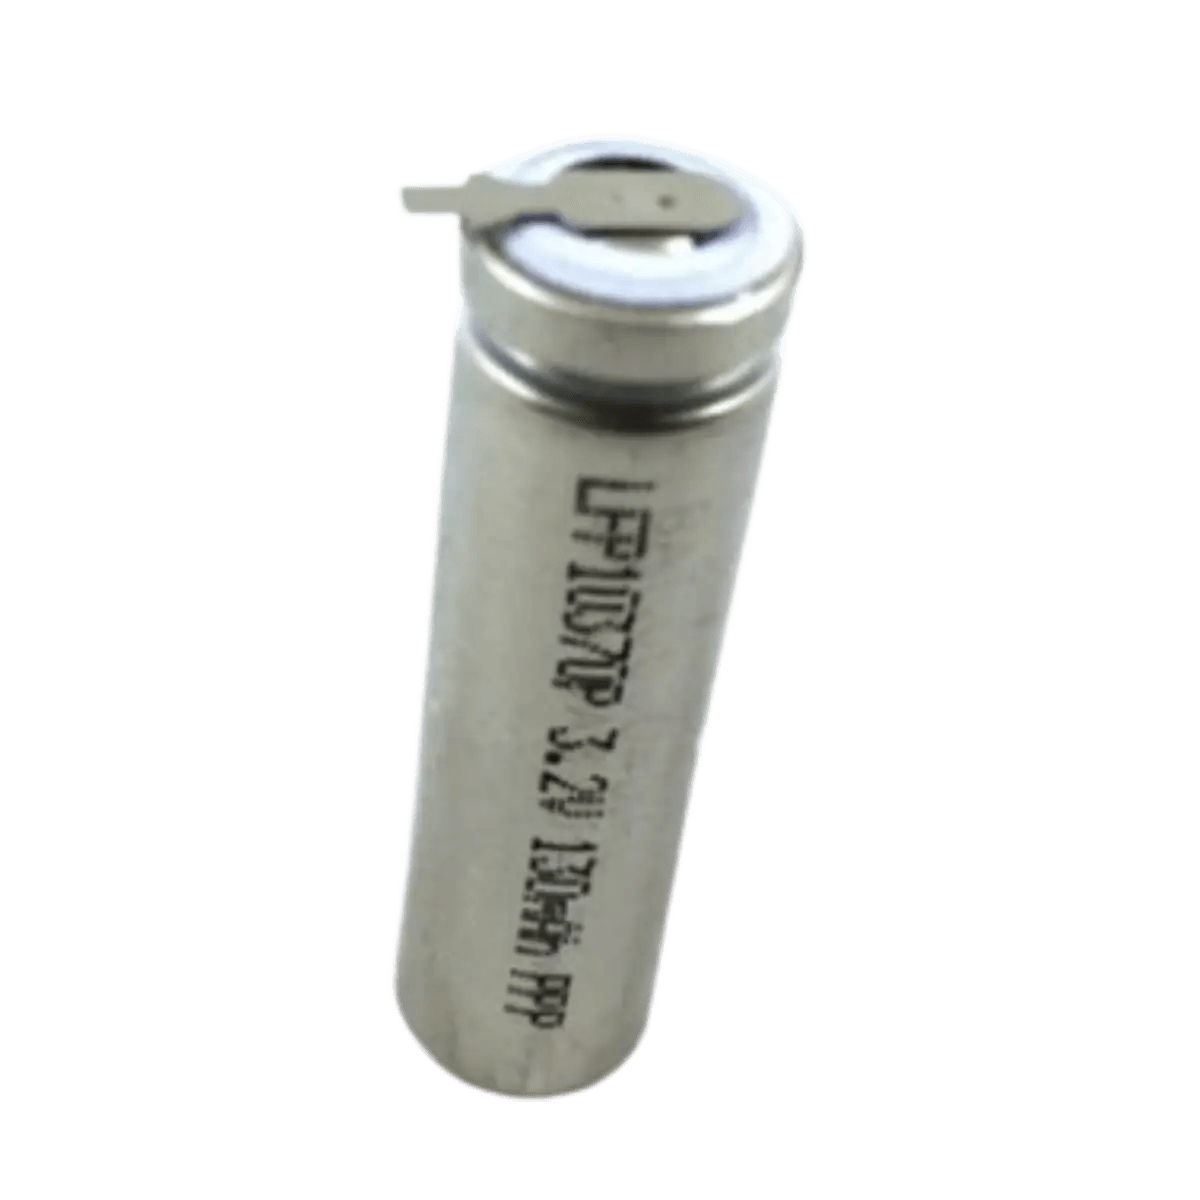 Batterie LiFePo4 10370 3.2 v 150mAh avec cosses